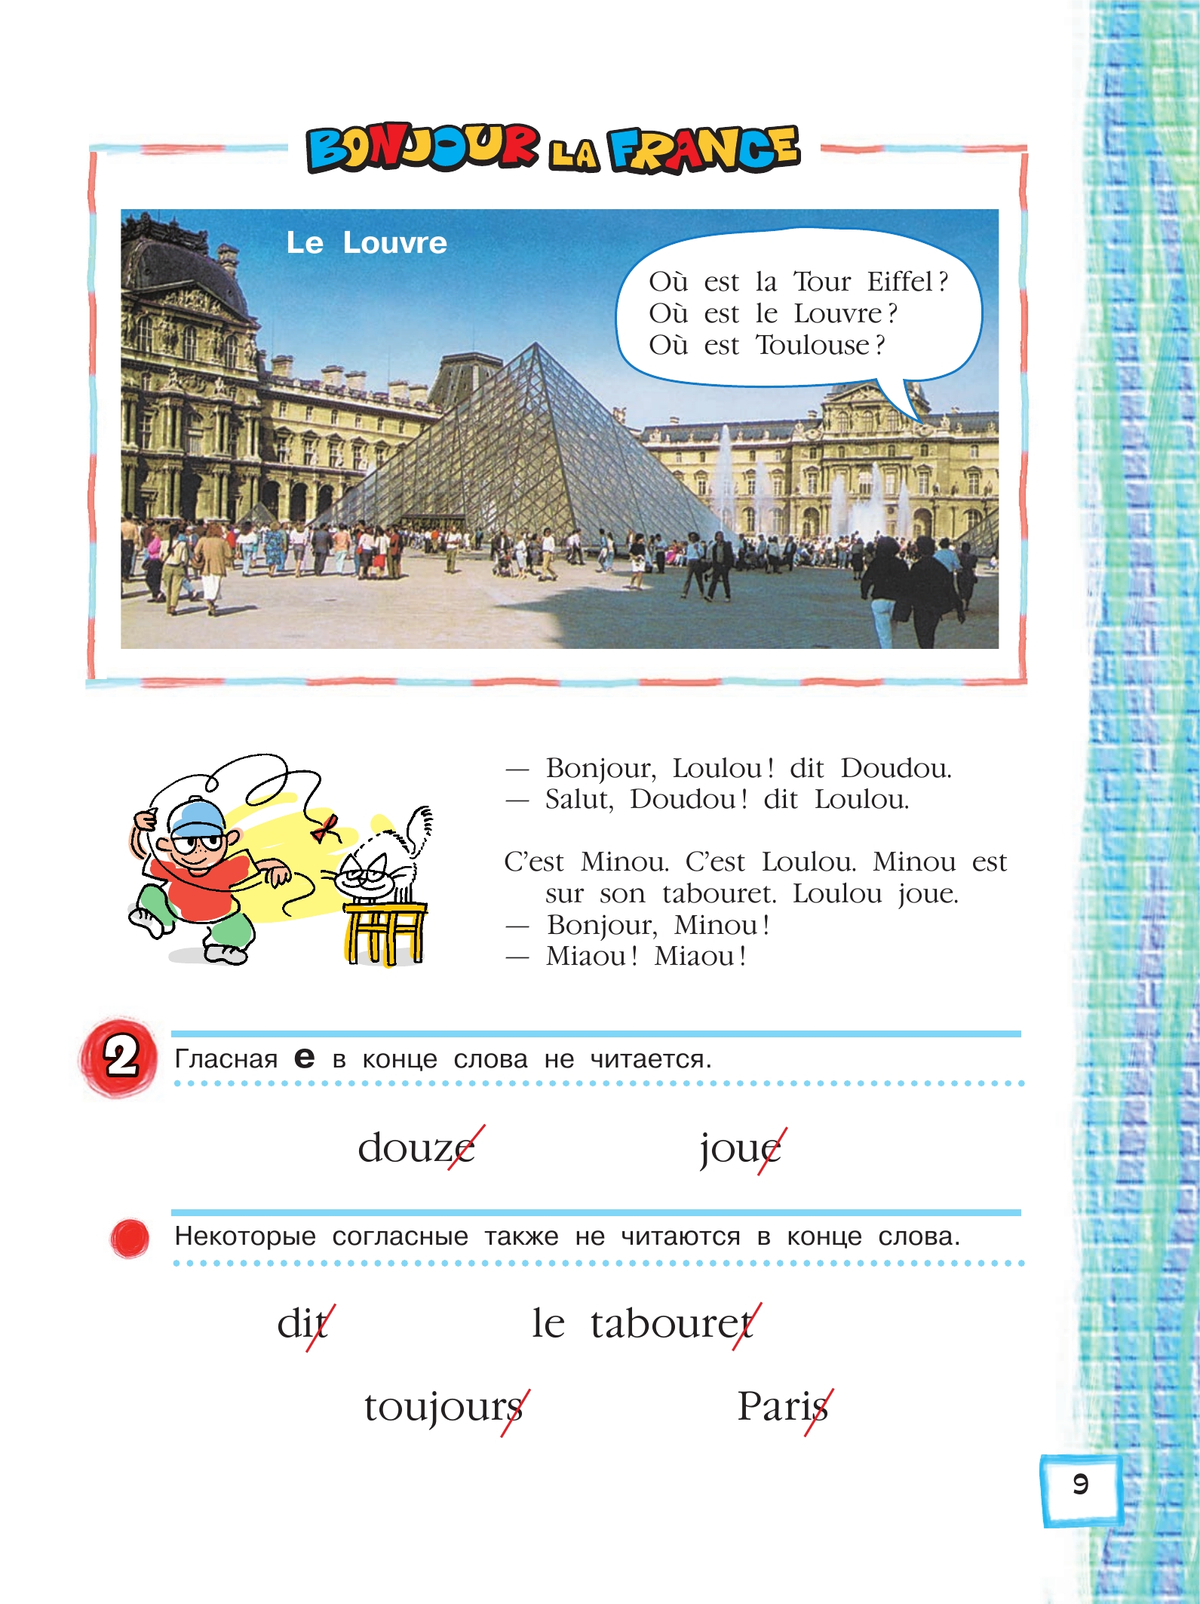 Французский язык. Второй иностранный язык. 5 класс. Учебник. В 2 ч. Часть 1 2